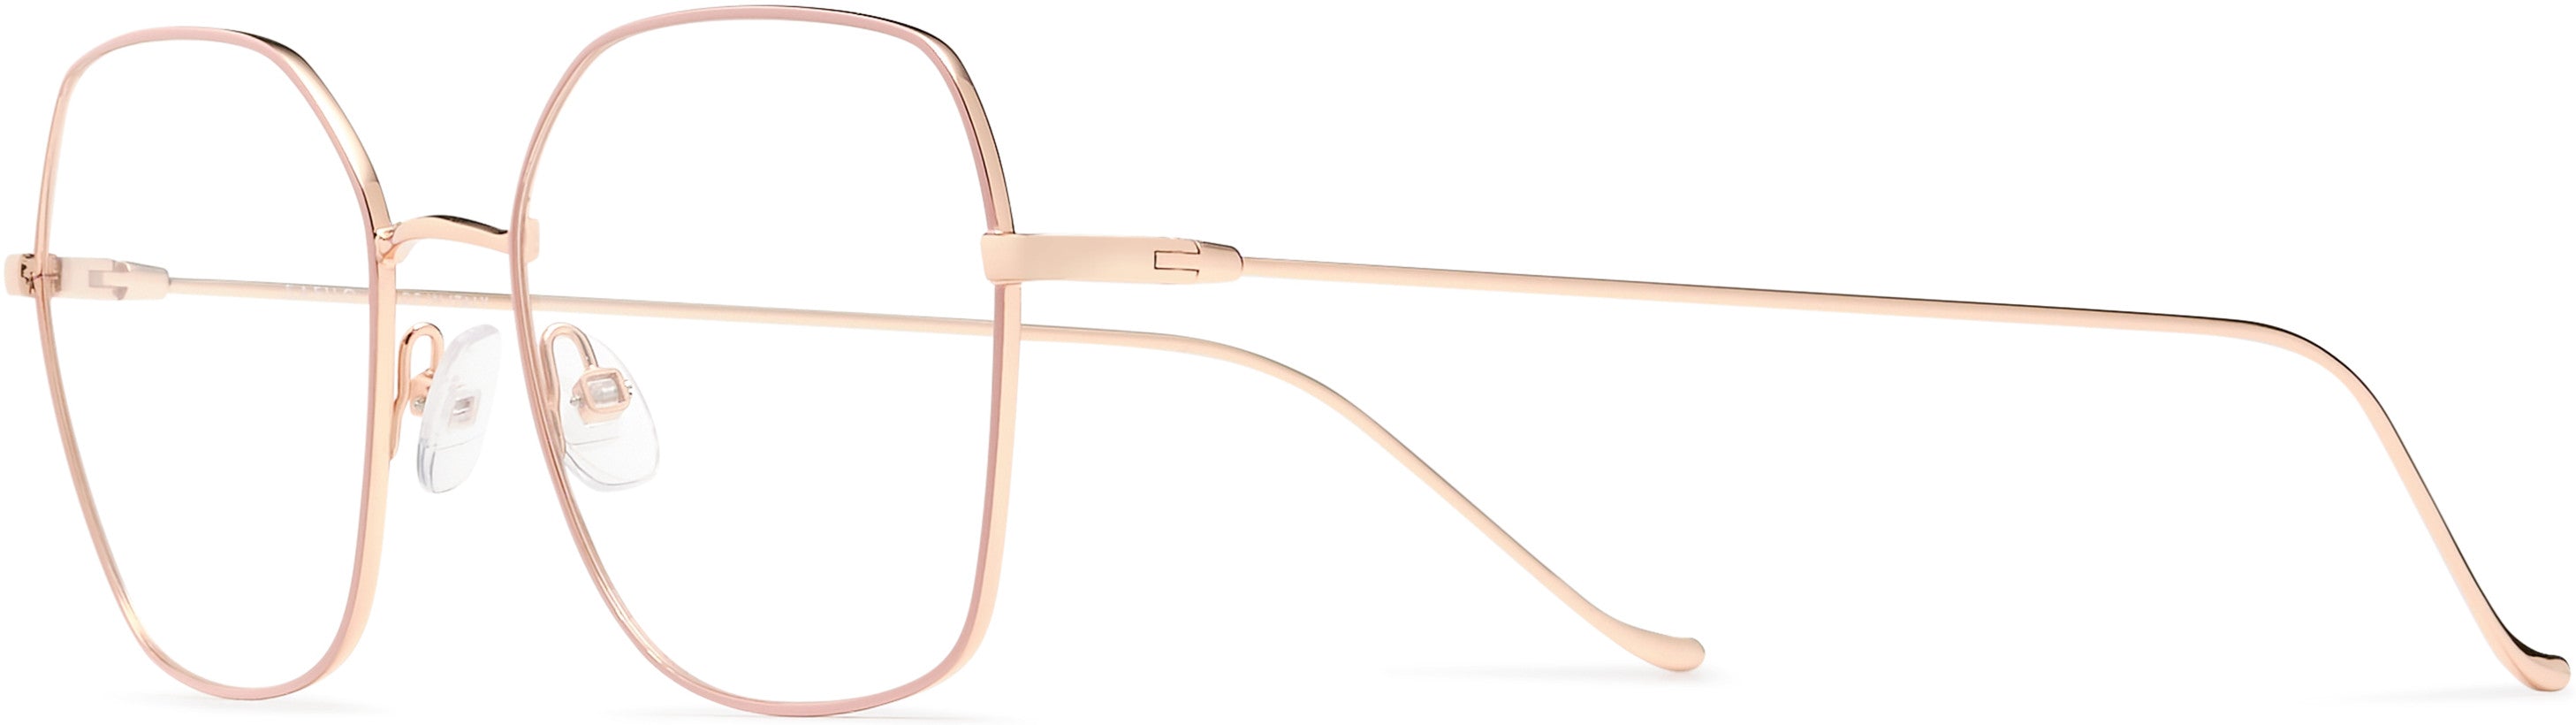 Safilo 2.0 Linea/T 11 Oval Modified Eyeglasses 0EYR-0EYR  Gold Pink (00 Demo Lens)